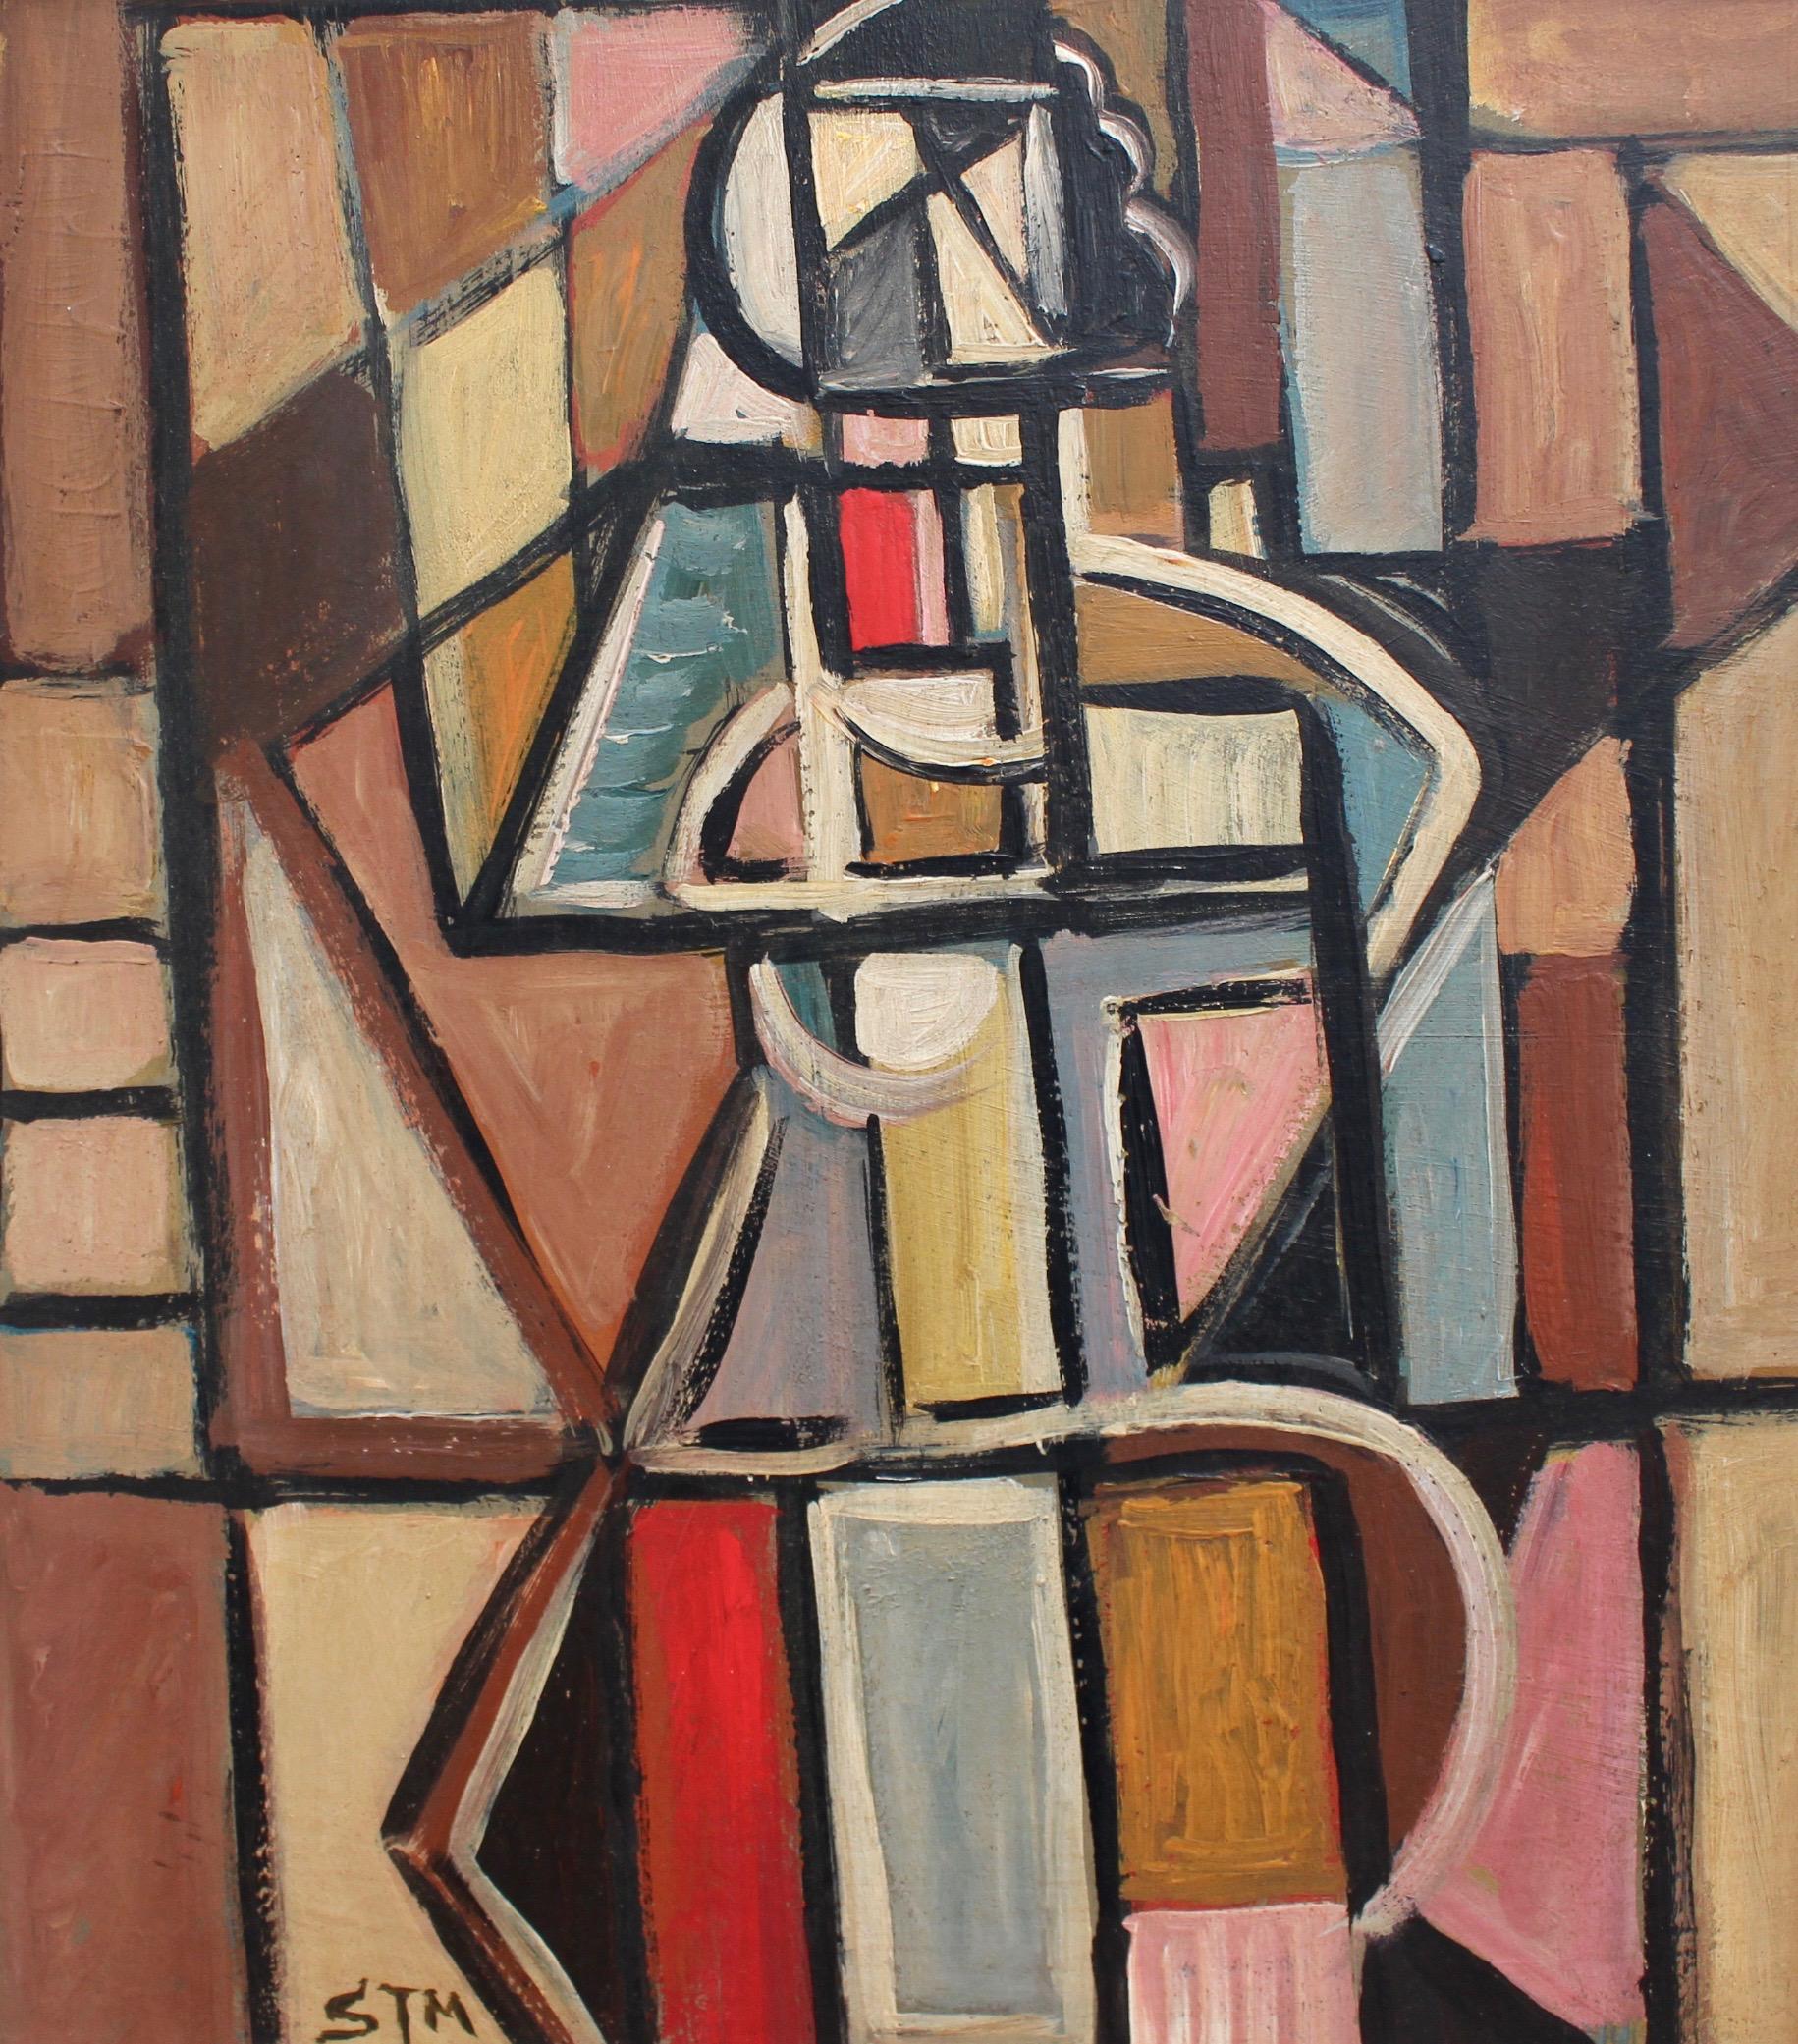 STM Portrait Painting - Cubist Figure 1 